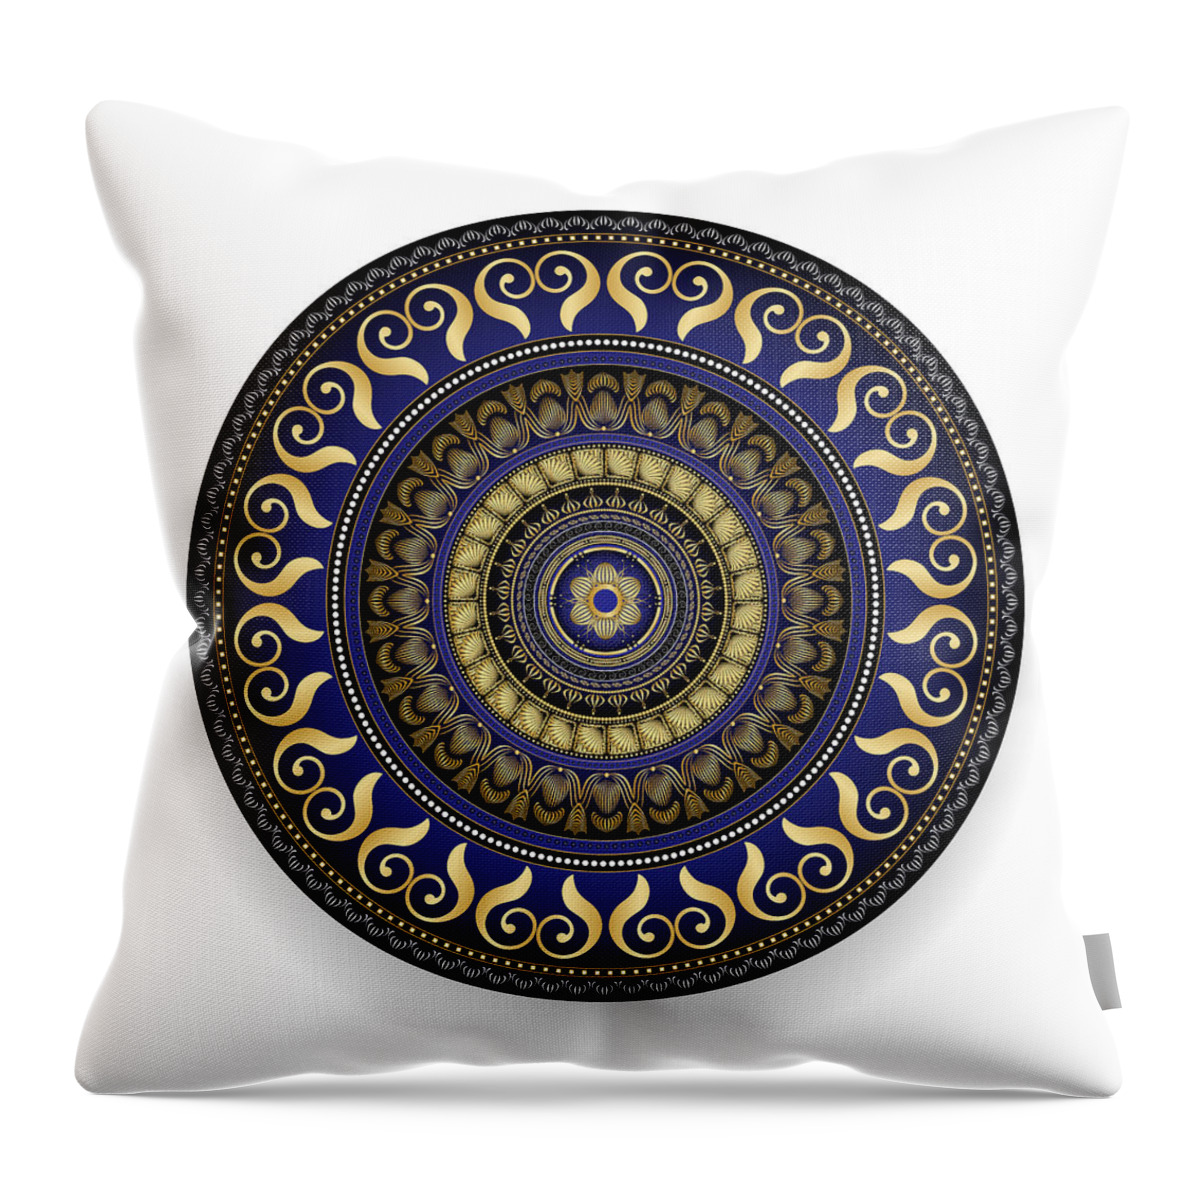 Mandala Throw Pillow featuring the digital art Circulosity No 2876 by Alan Bennington